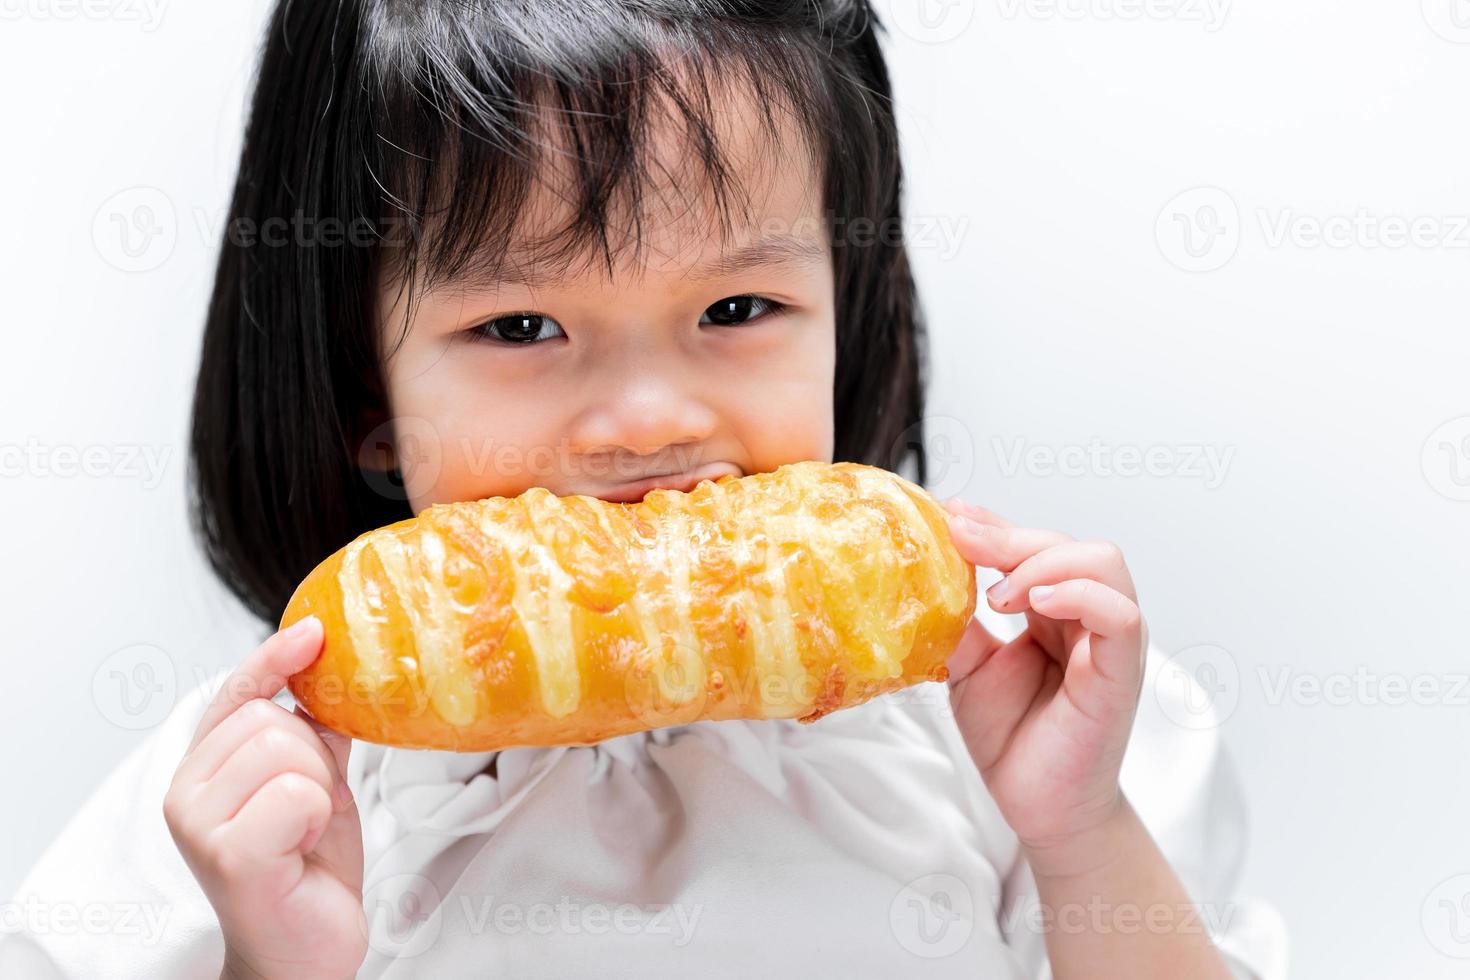 bambino sono felici di mangiare morbido pane dolce. merende per bambini. ragazza con pane fatto in casa. foto